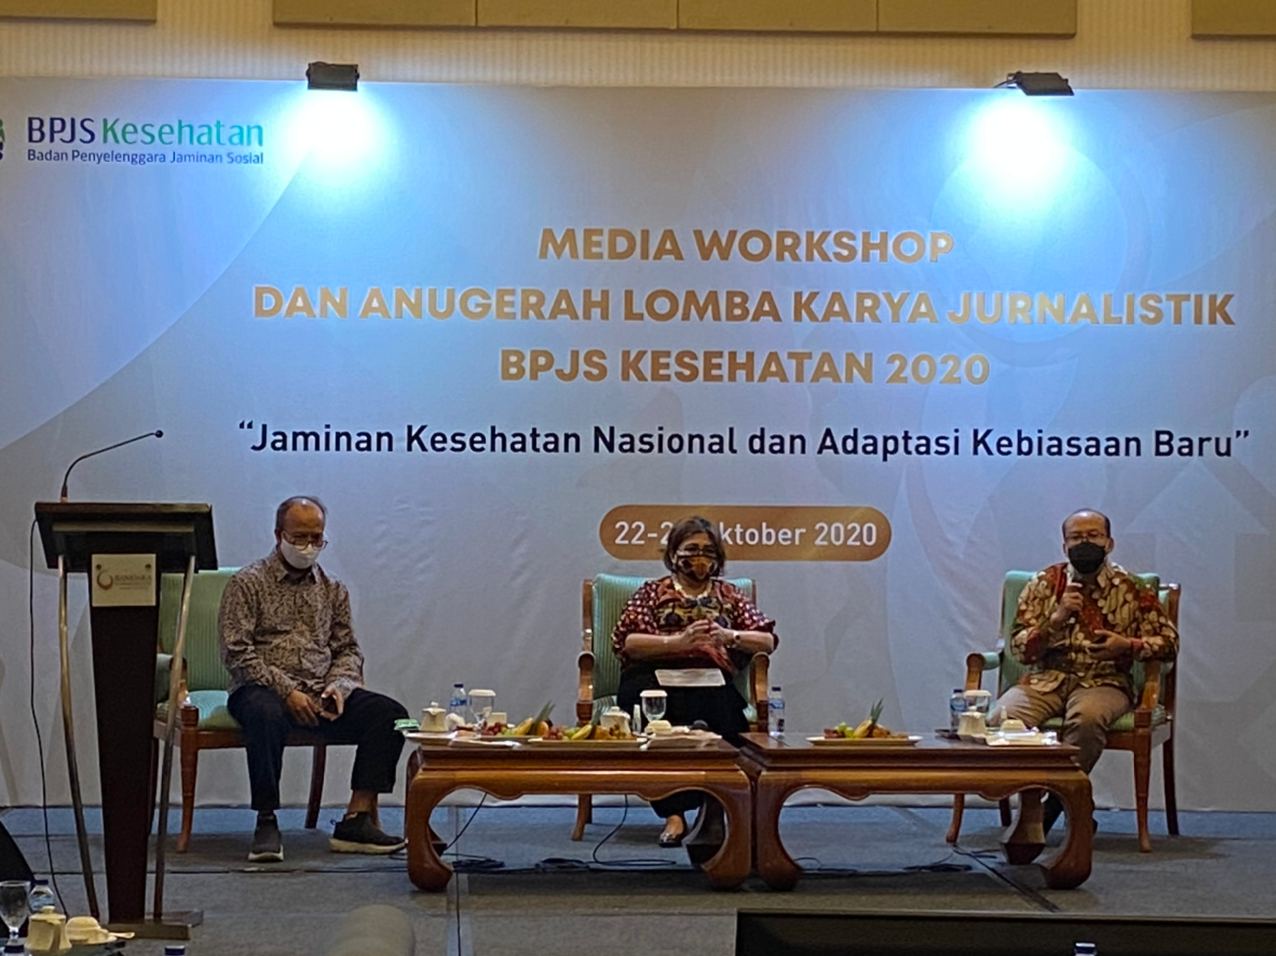 Media Workshop dan Anugerah Lomba Karya Jurnalistik 2020